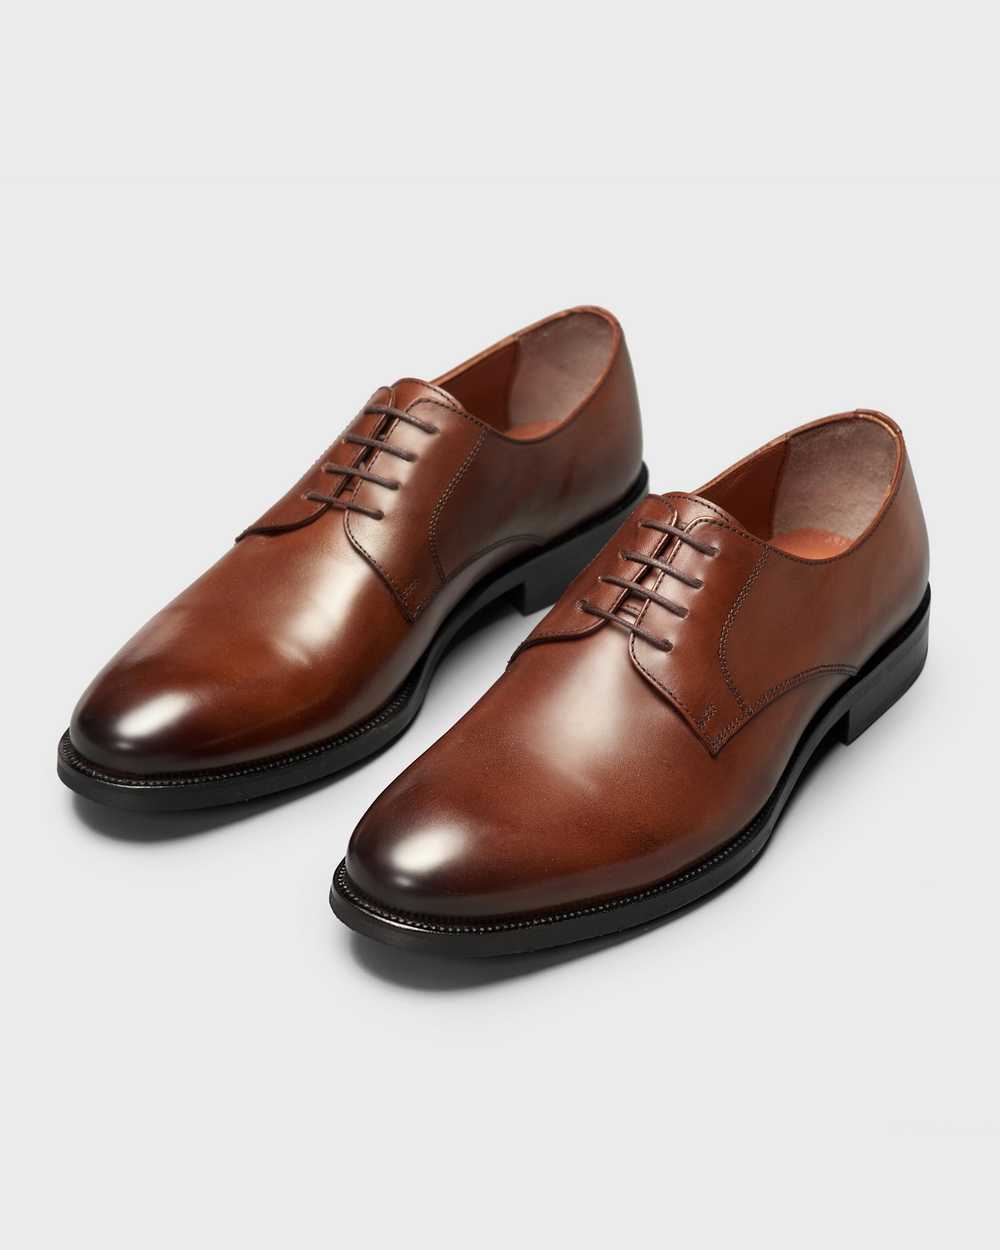 Туфли мужские дерби классические коричневые на каучуковой подошве